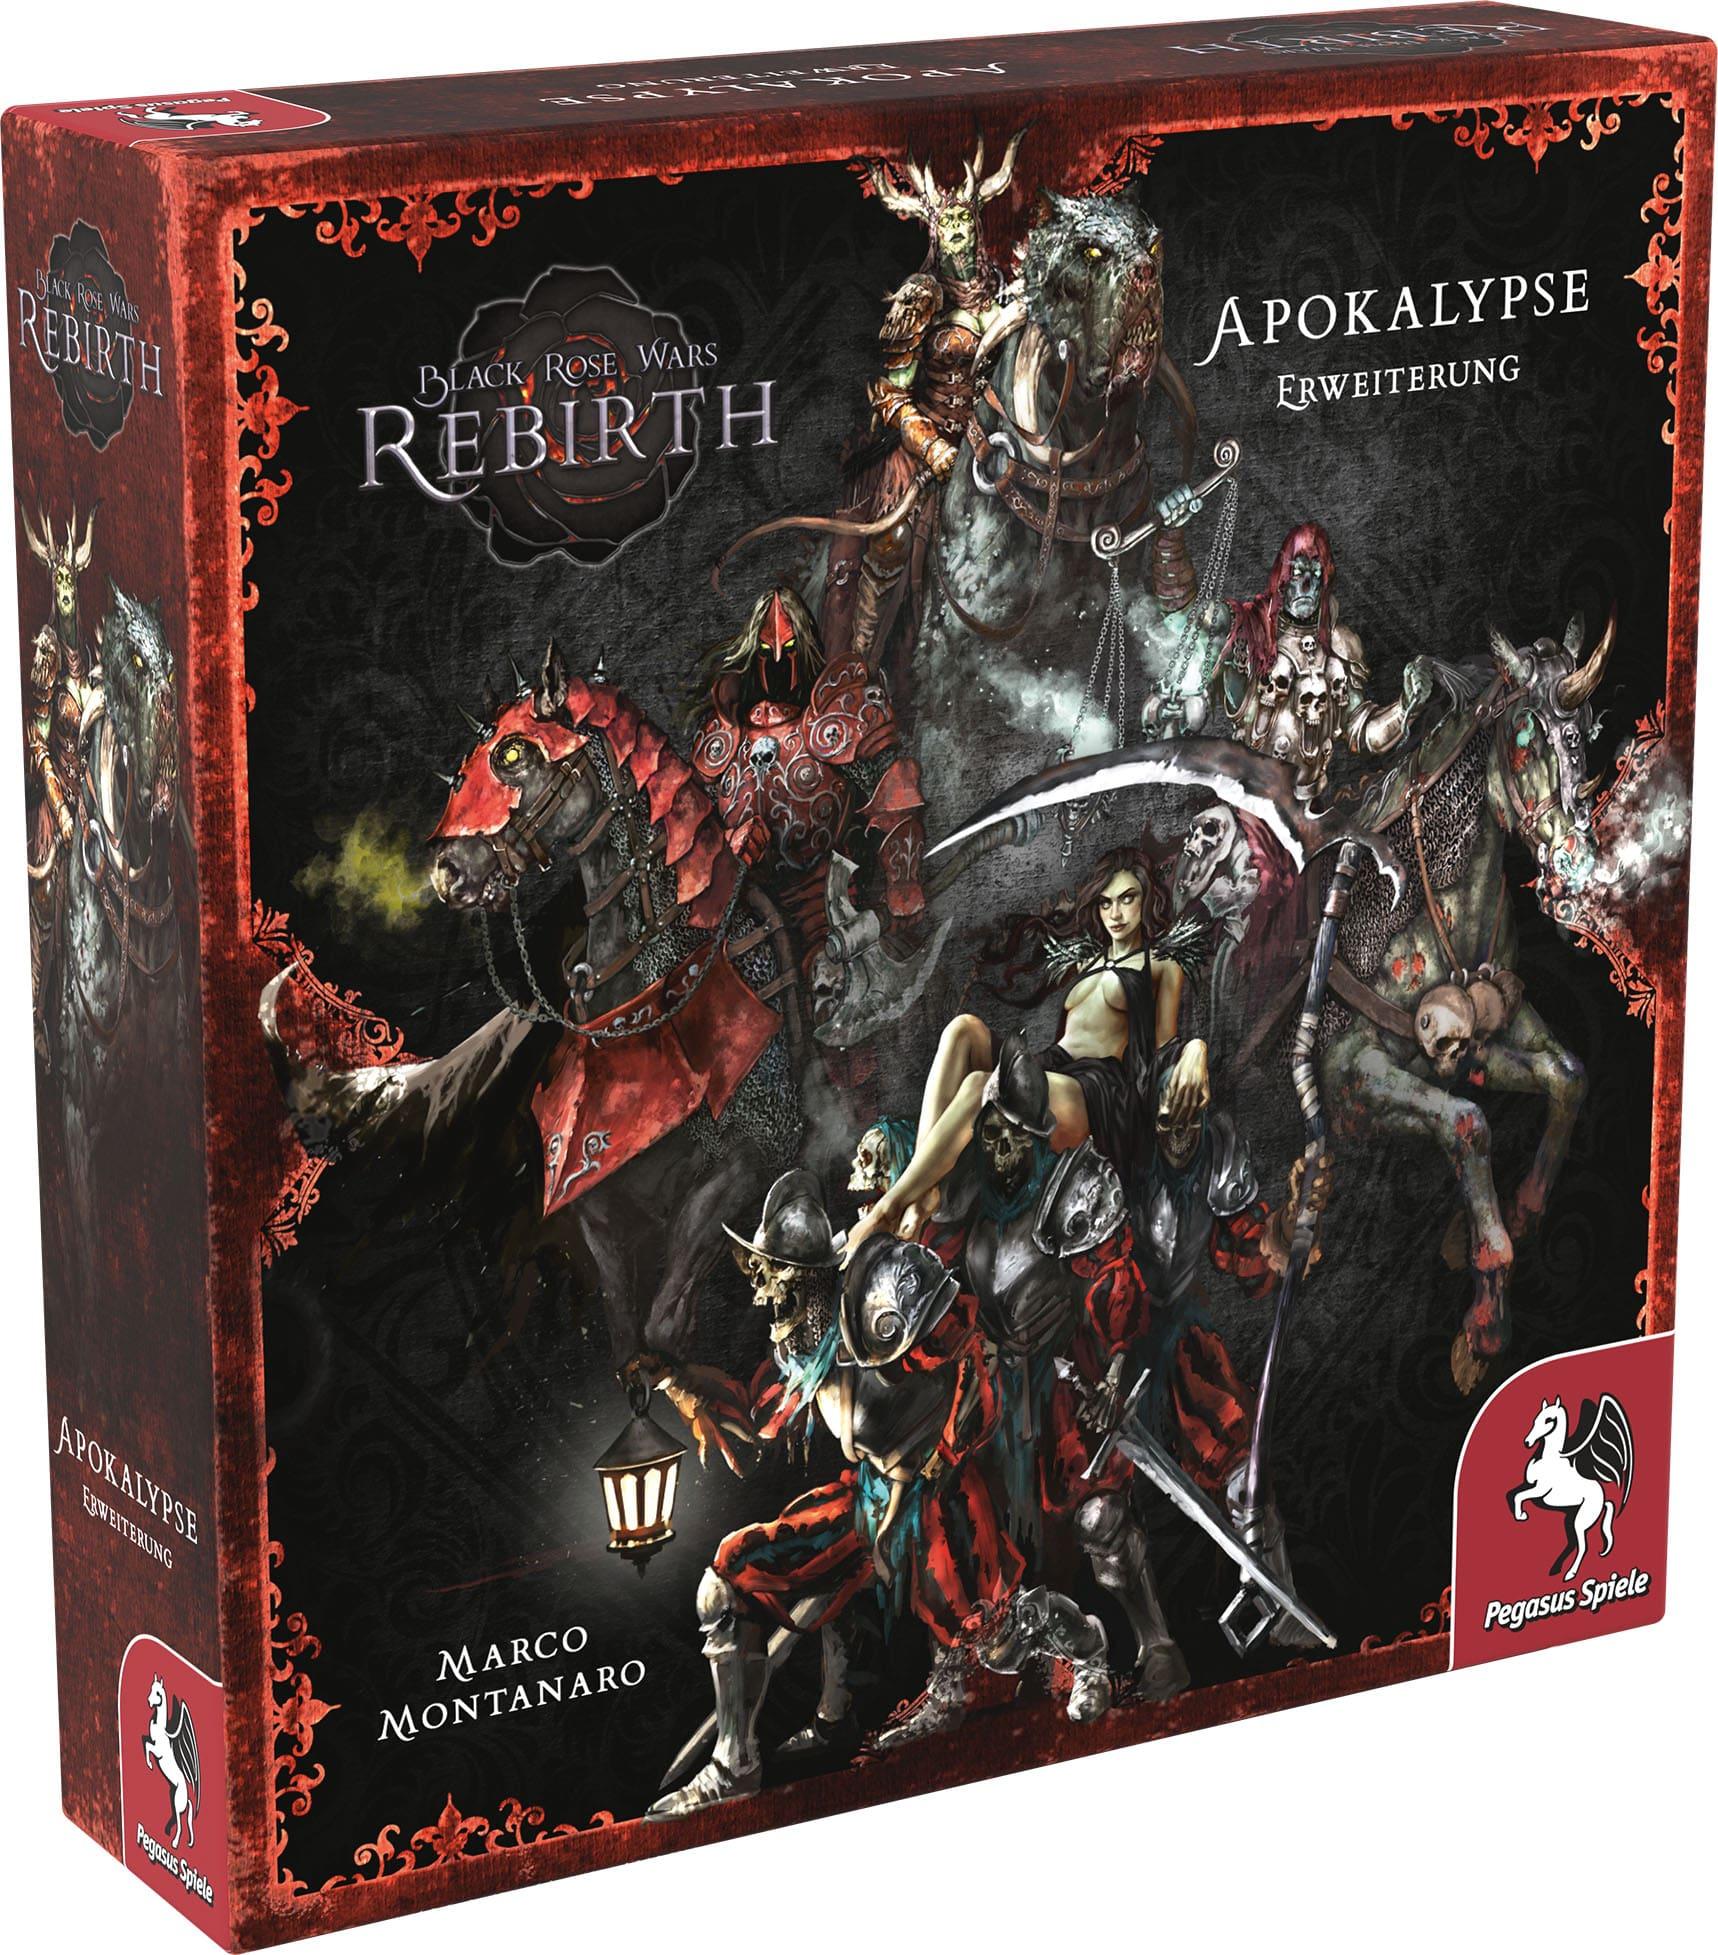 Black Rose Wars - Rebirth: Erweiterung Apokalypse